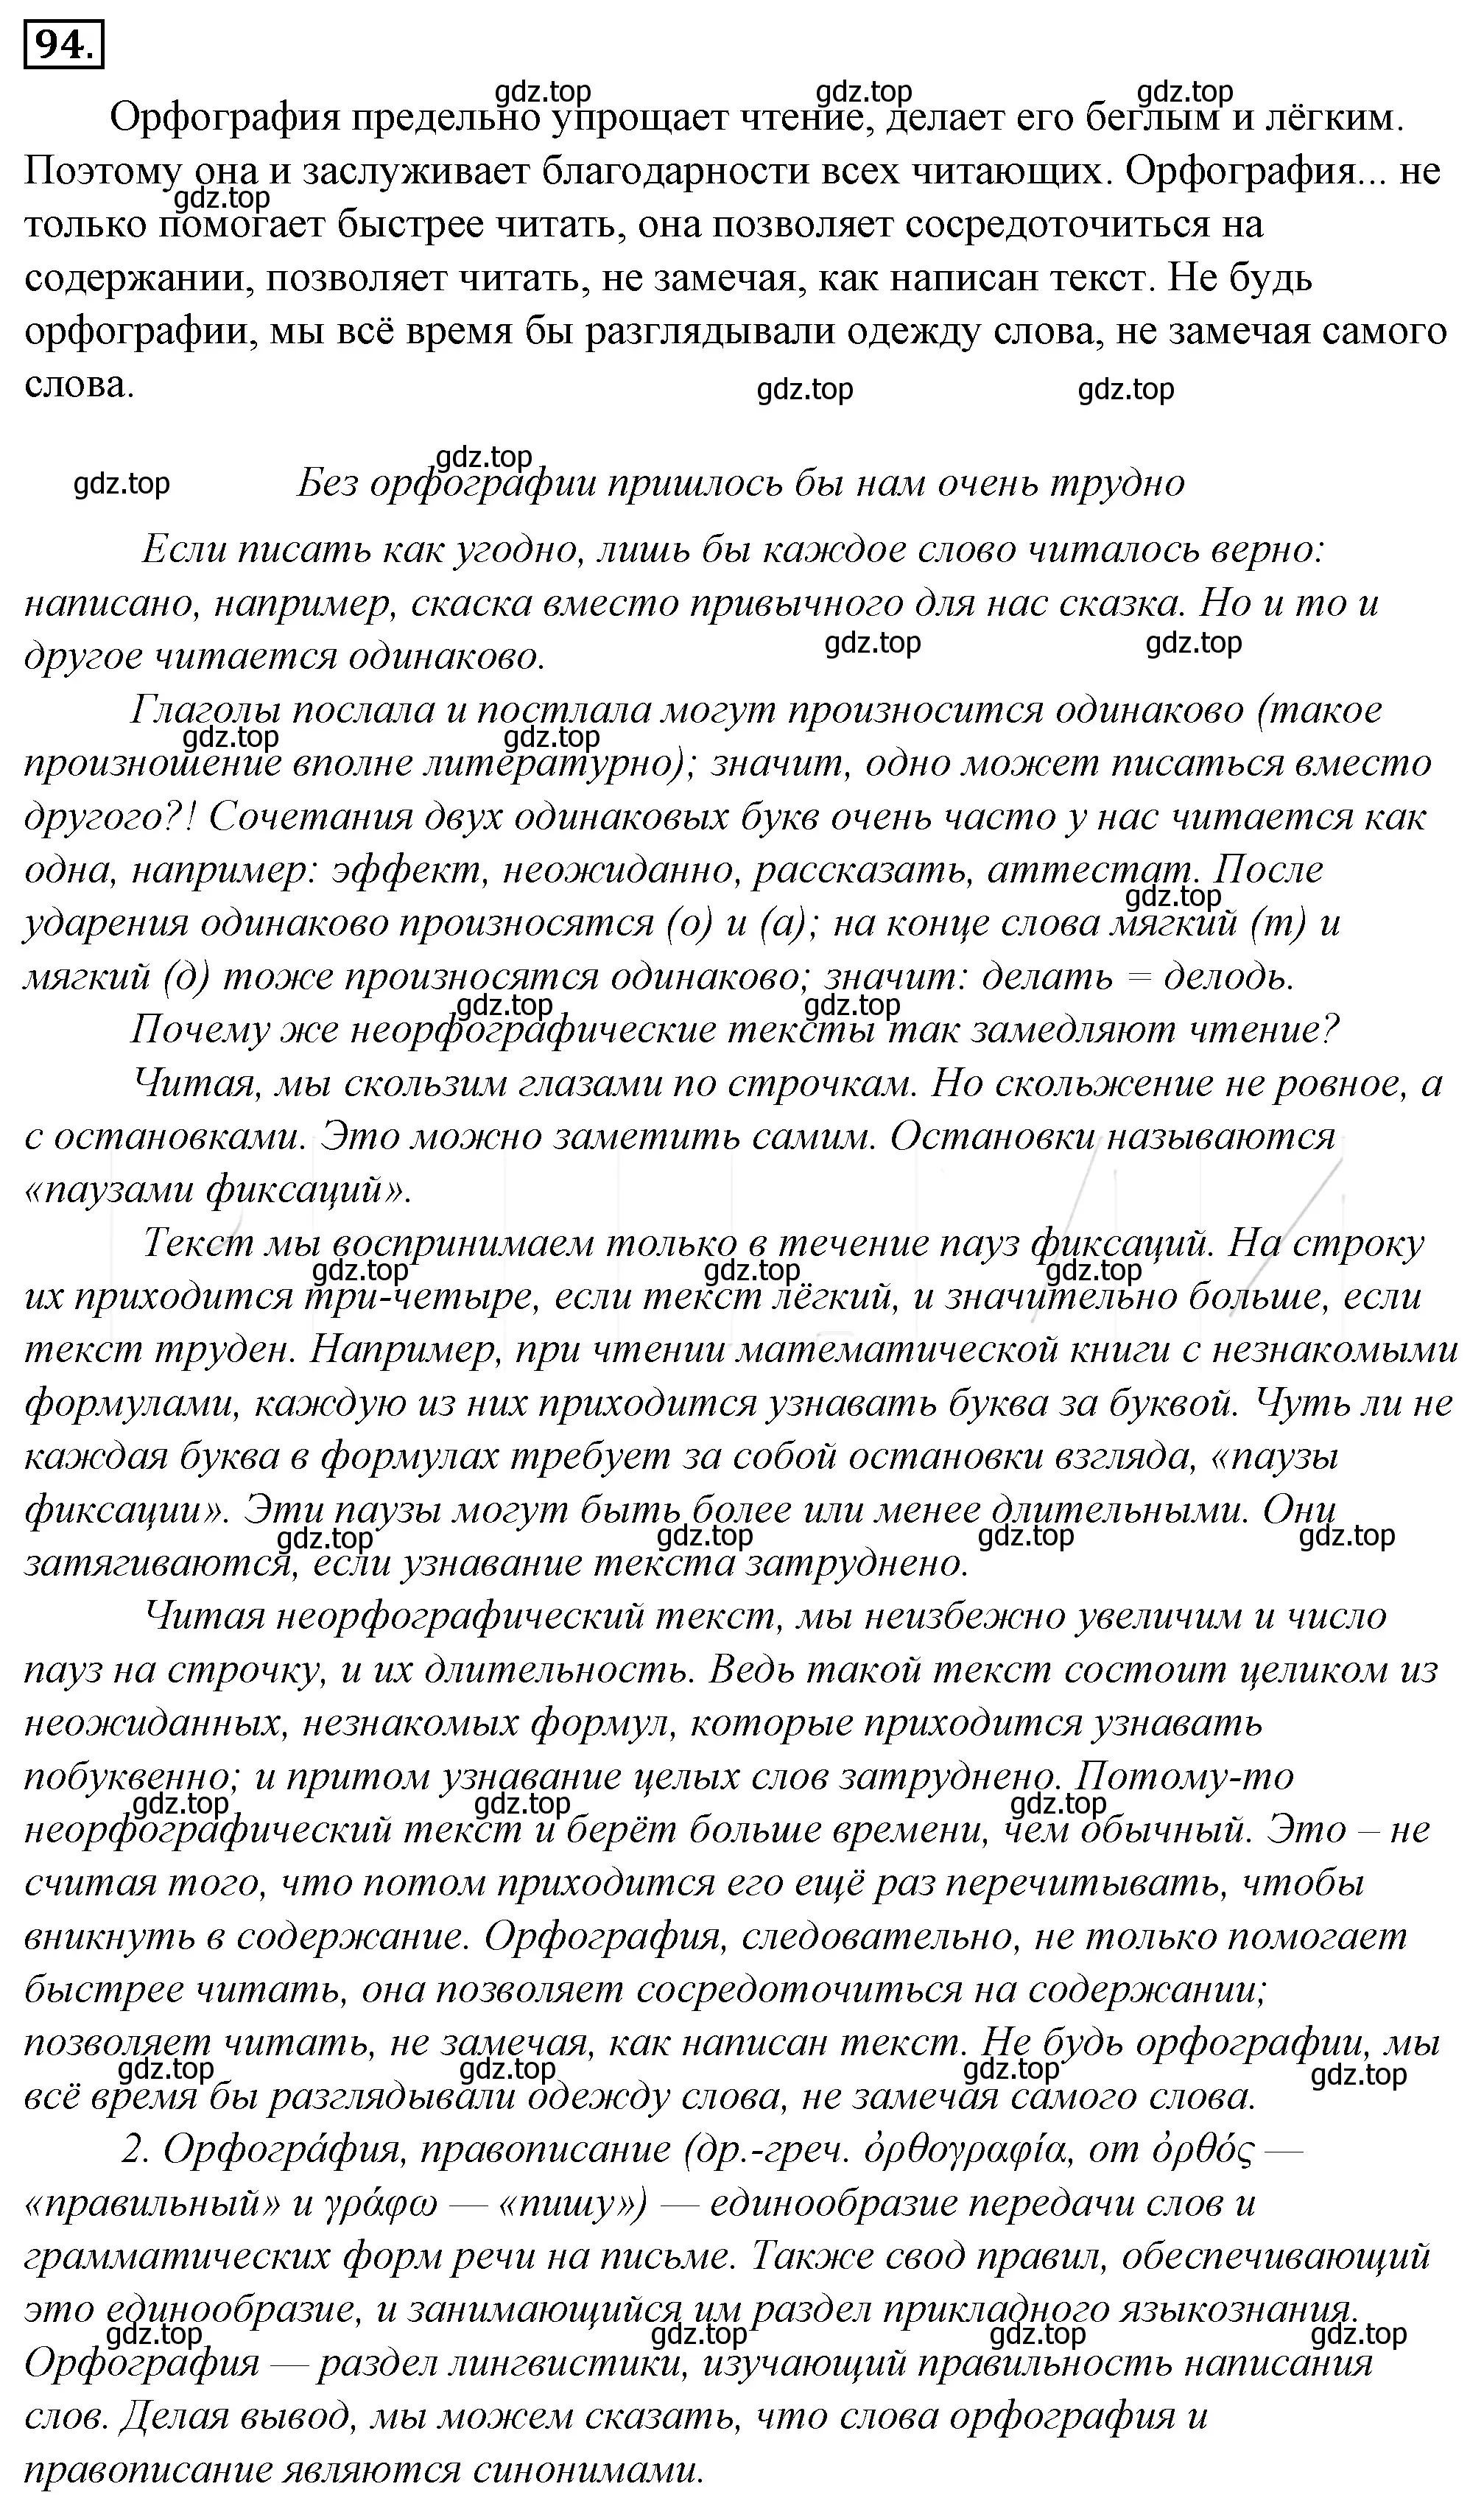 Решение 4. номер 118 (страница 113) гдз по русскому языку 10-11 класс Гольцова, Шамшин, учебник 1 часть